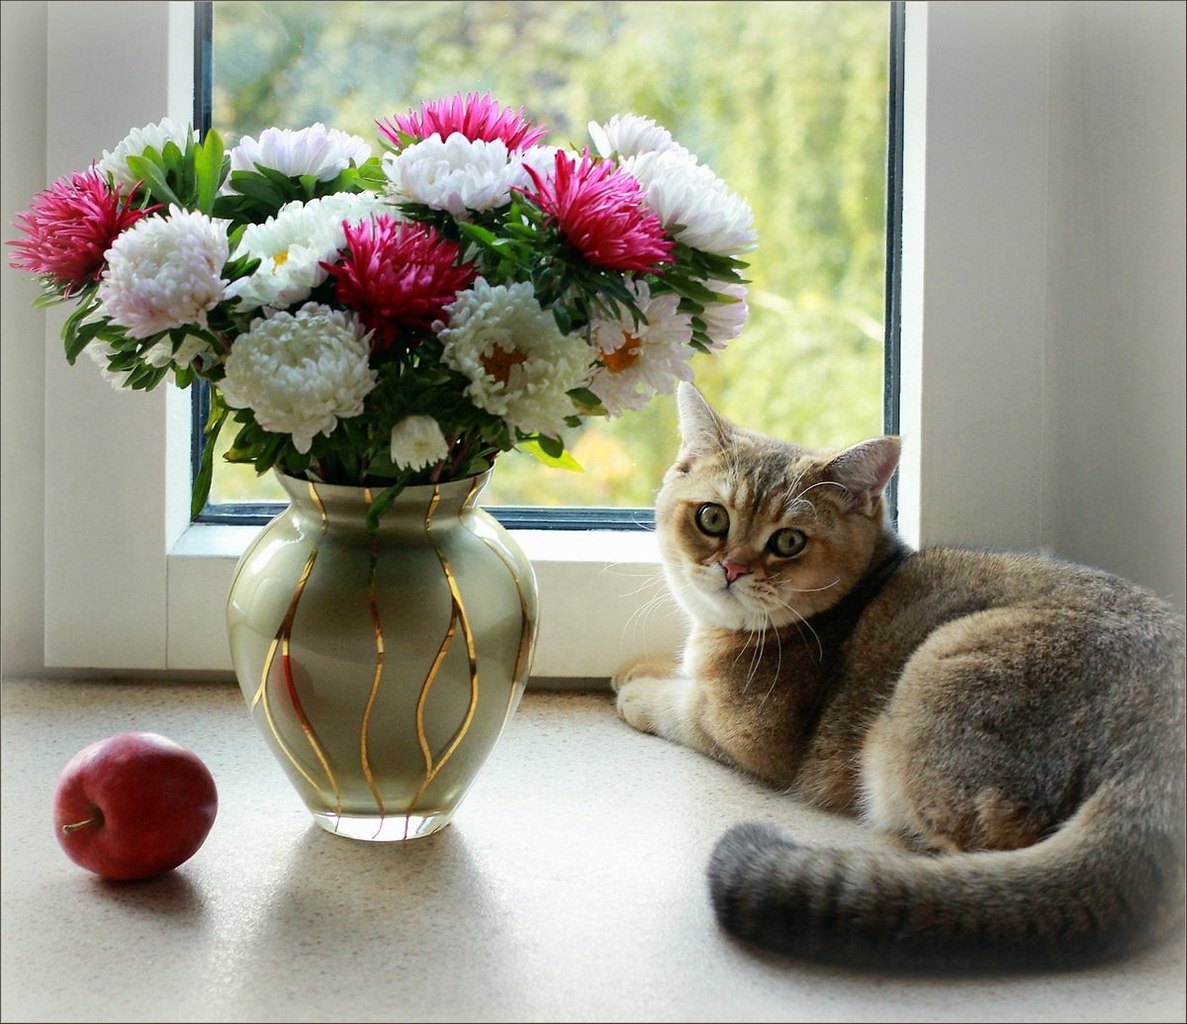 Котенок любит играть с цветами. Кошечка с цветами. Цветы на подоконнике. Котенок с букетом цветов. Цветы в вазе на окне.